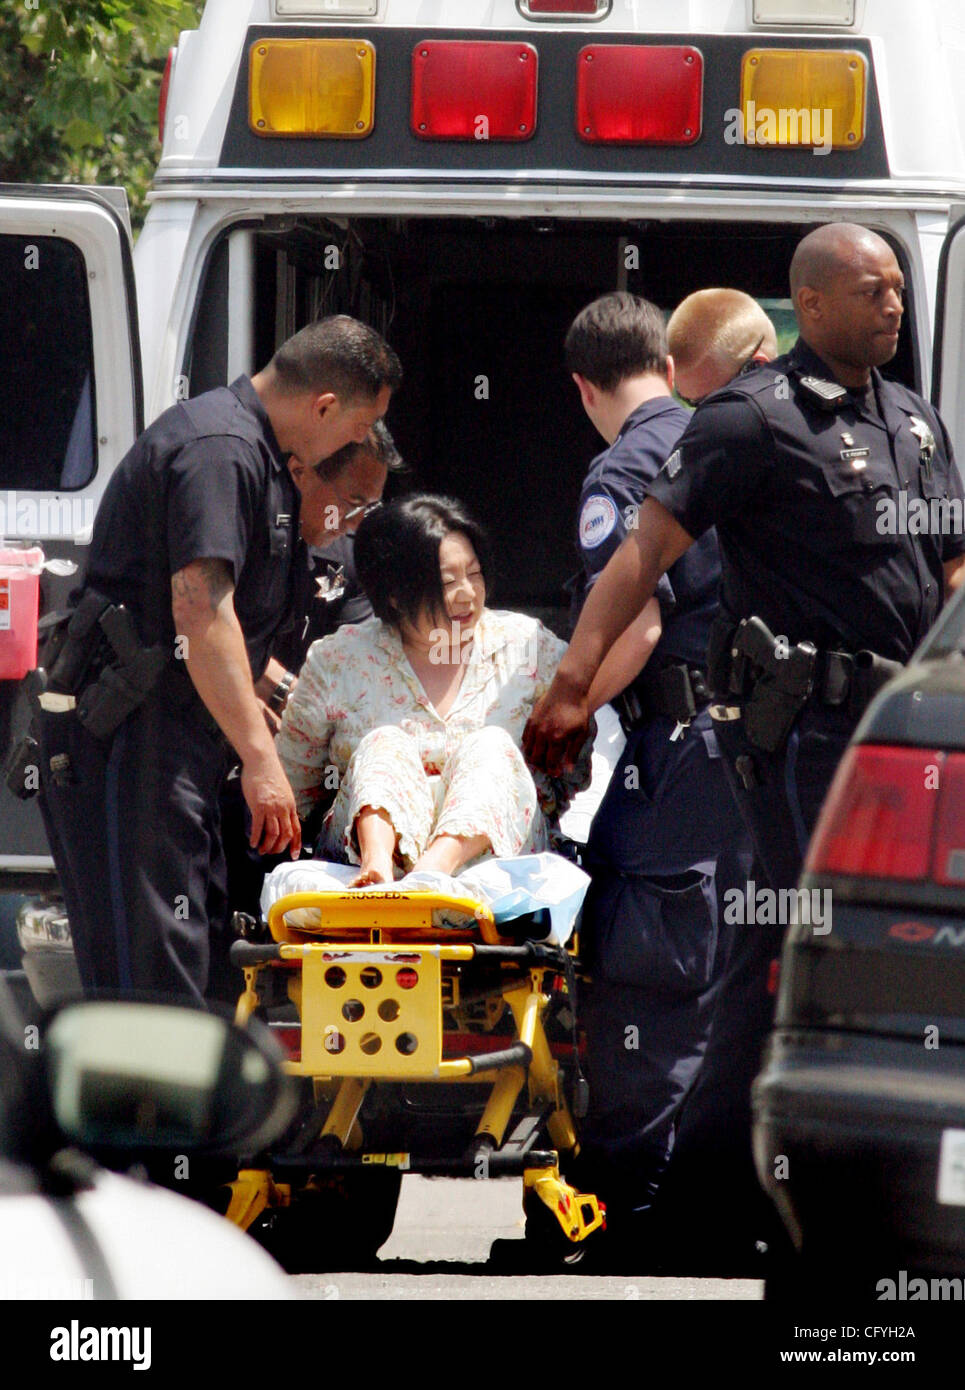 Mayo 18, 2007 - Oakland, CA, EE.UU. - Oakland la policía detuvo Marsha Honda, de 51 años, sin incidentes después de que le dispararon en el interior de su 3er piso el viernes por la mañana en 411 Fairmont St. en Oakland. El apartamento fue evacuada después de que los vecinos llamaron a la policía acerca de disparos efectuados alrededor de las 9:43 am. La policía Foto de stock